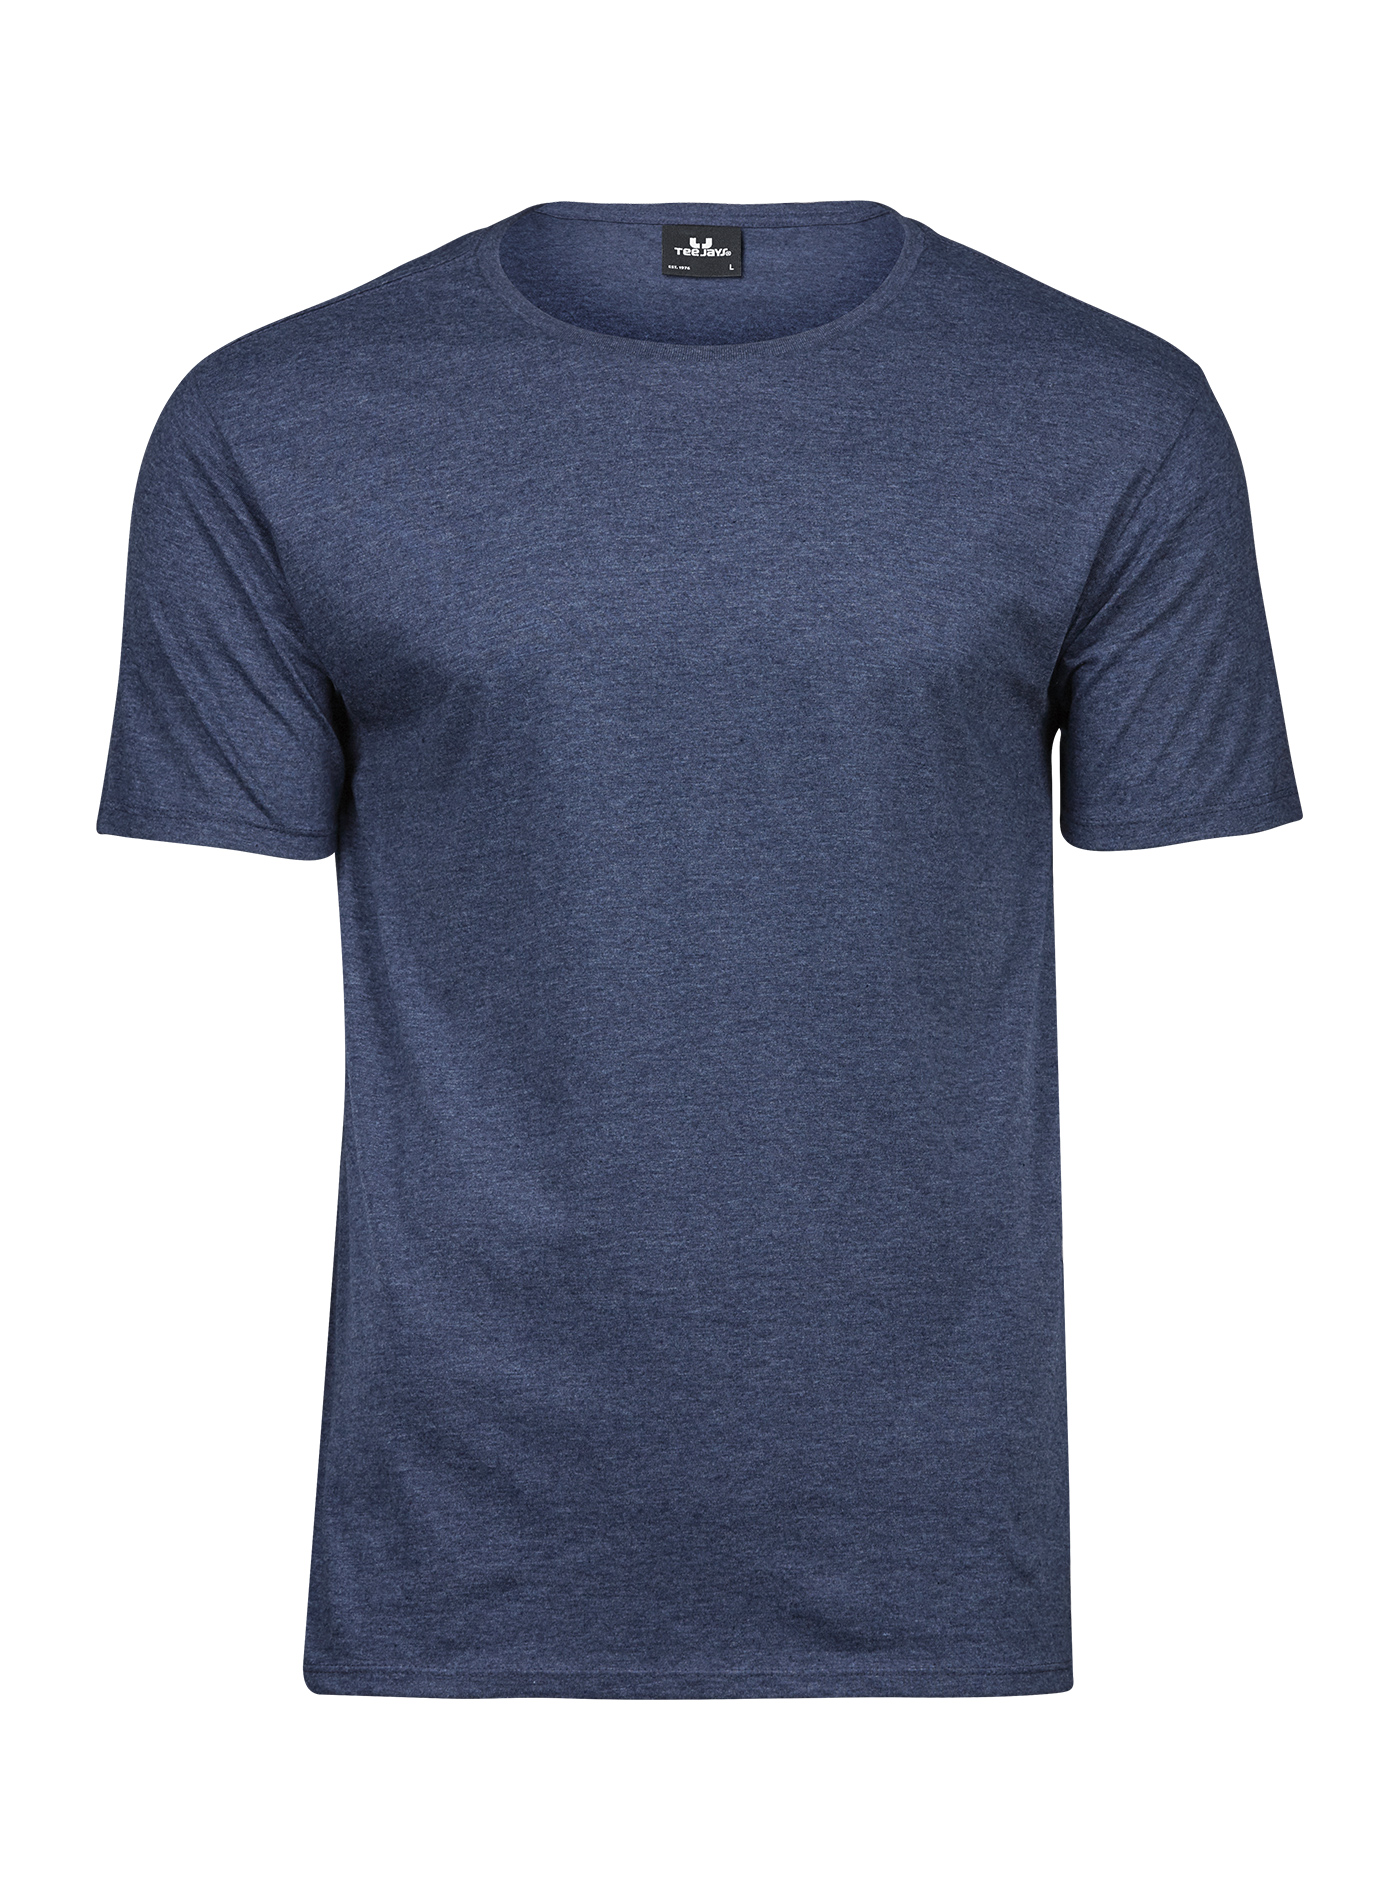 Pánské melírované tričko Tee Jays - Džínově modrá S